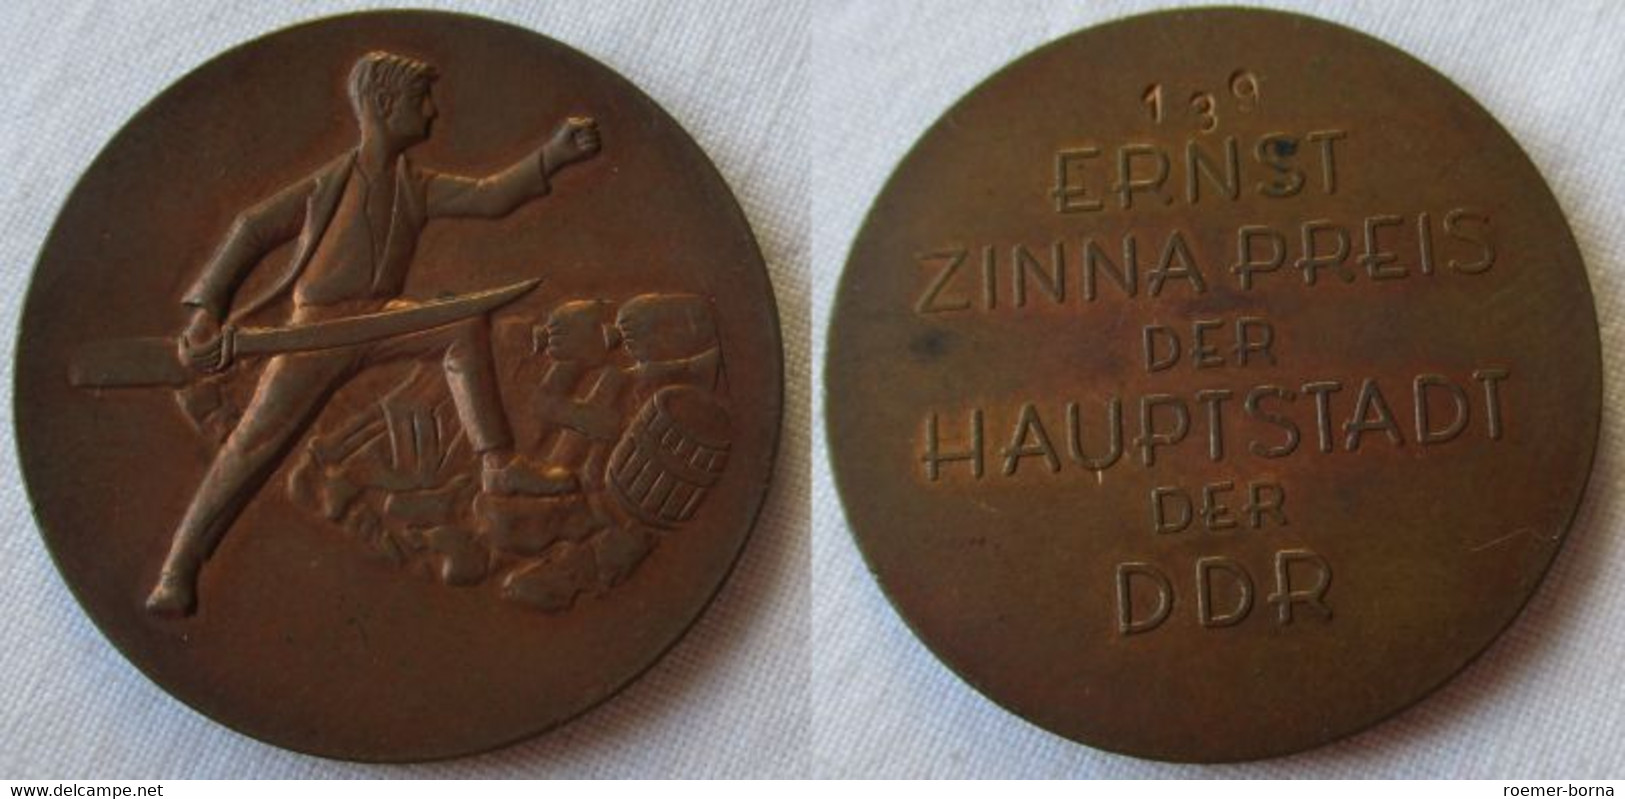 DDR Abzeichen Ernst Zinna Preis Der Hauptstadt Der DDR PROBE Nr. 139 (111165) - GDR